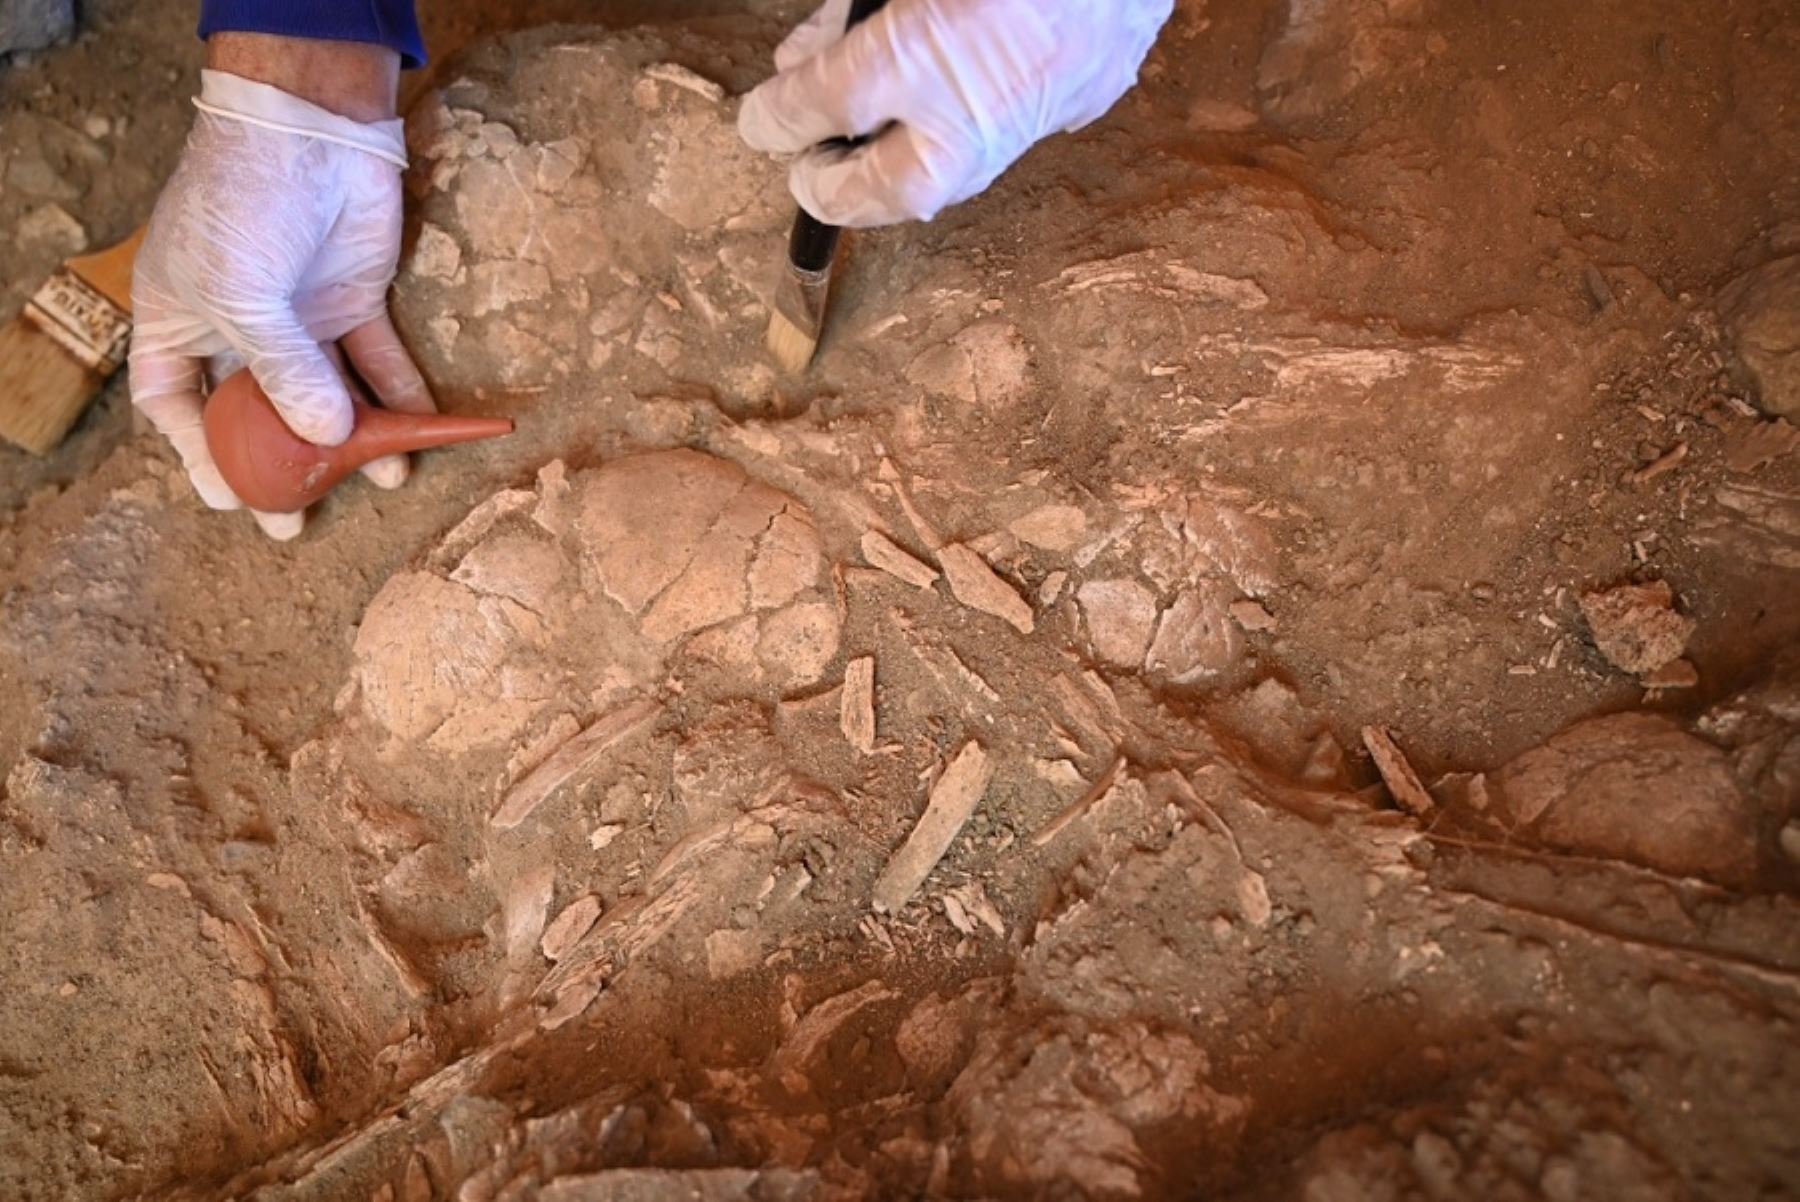 El equipo de arqueólogos liderados por Quirino Olivera acaba de encontrar en el sitio arqueológico Montegrande al menos cinco cráneos de personas adultas sueltos cerca del templo cuya arquitectura tiene forma de espiral hecha de piedras.